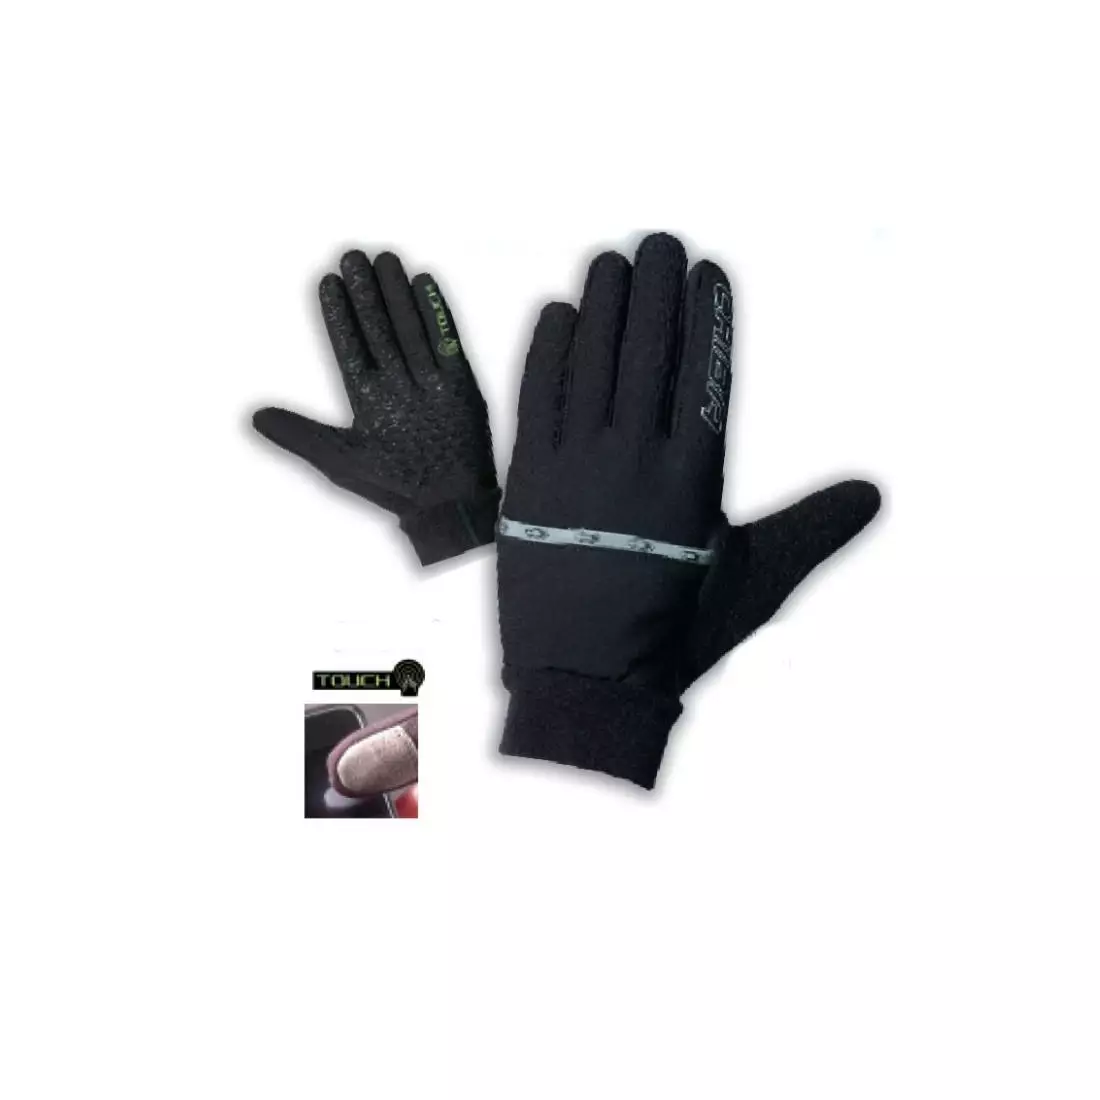 CHIBA ULTIMATE TOUCH zimowe rękawiczki rowerowe, czarne